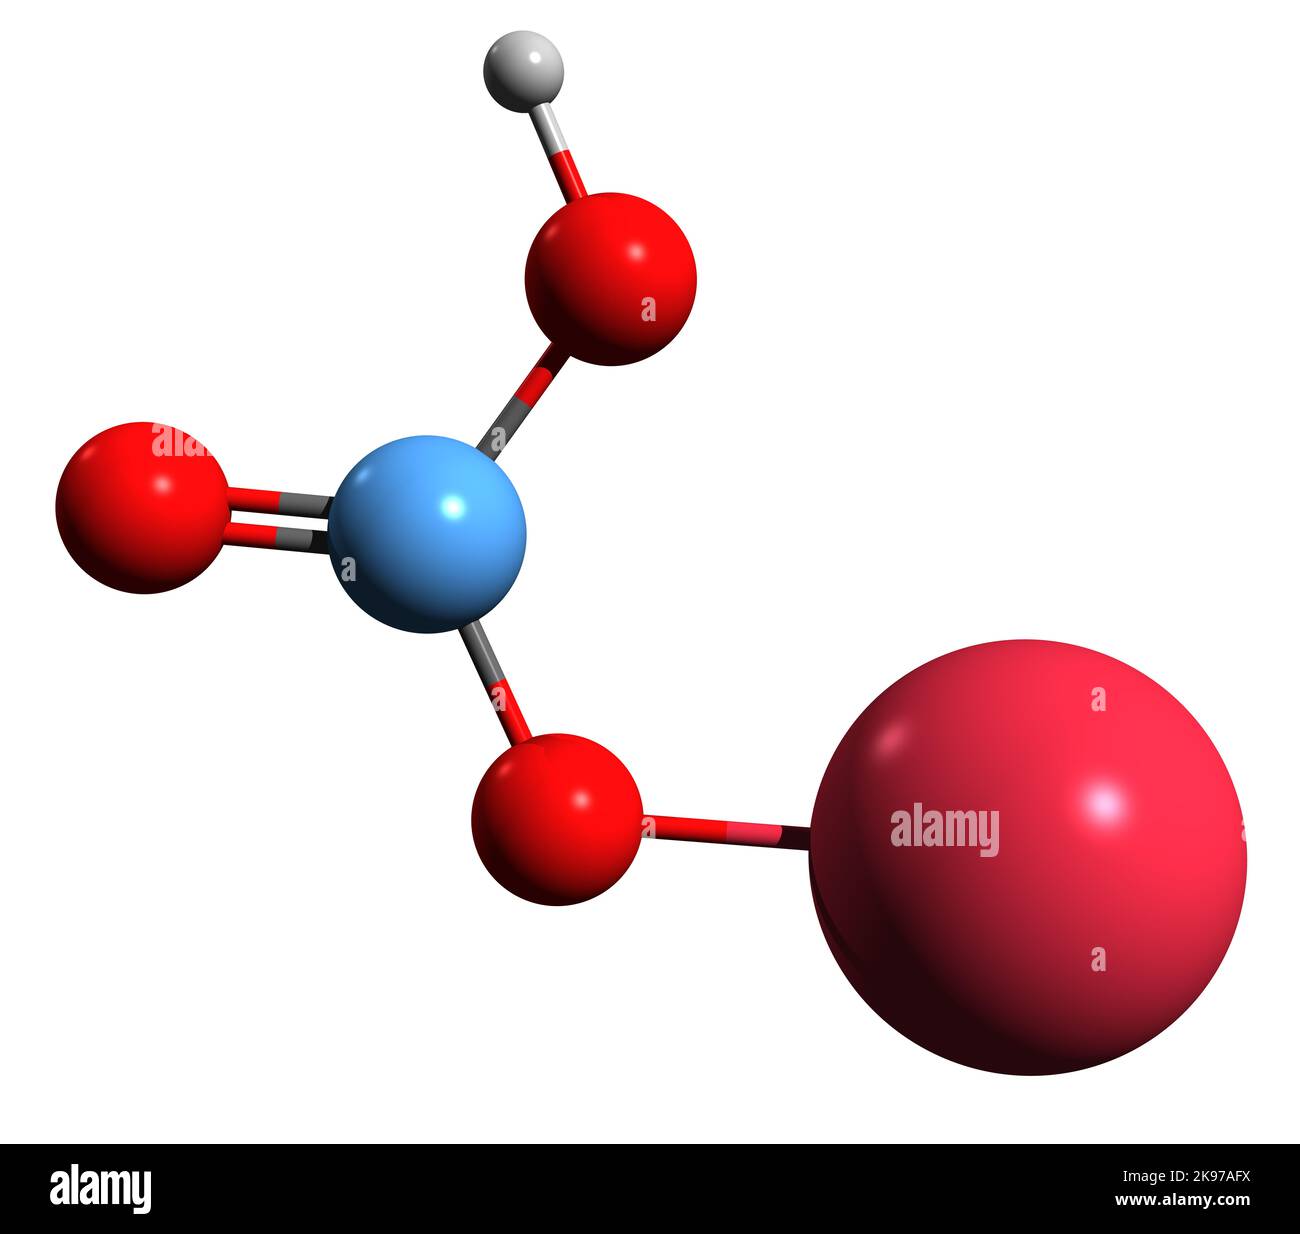 Sodio idrogeno carbonato immagini e fotografie stock ad alta risoluzione -  Alamy